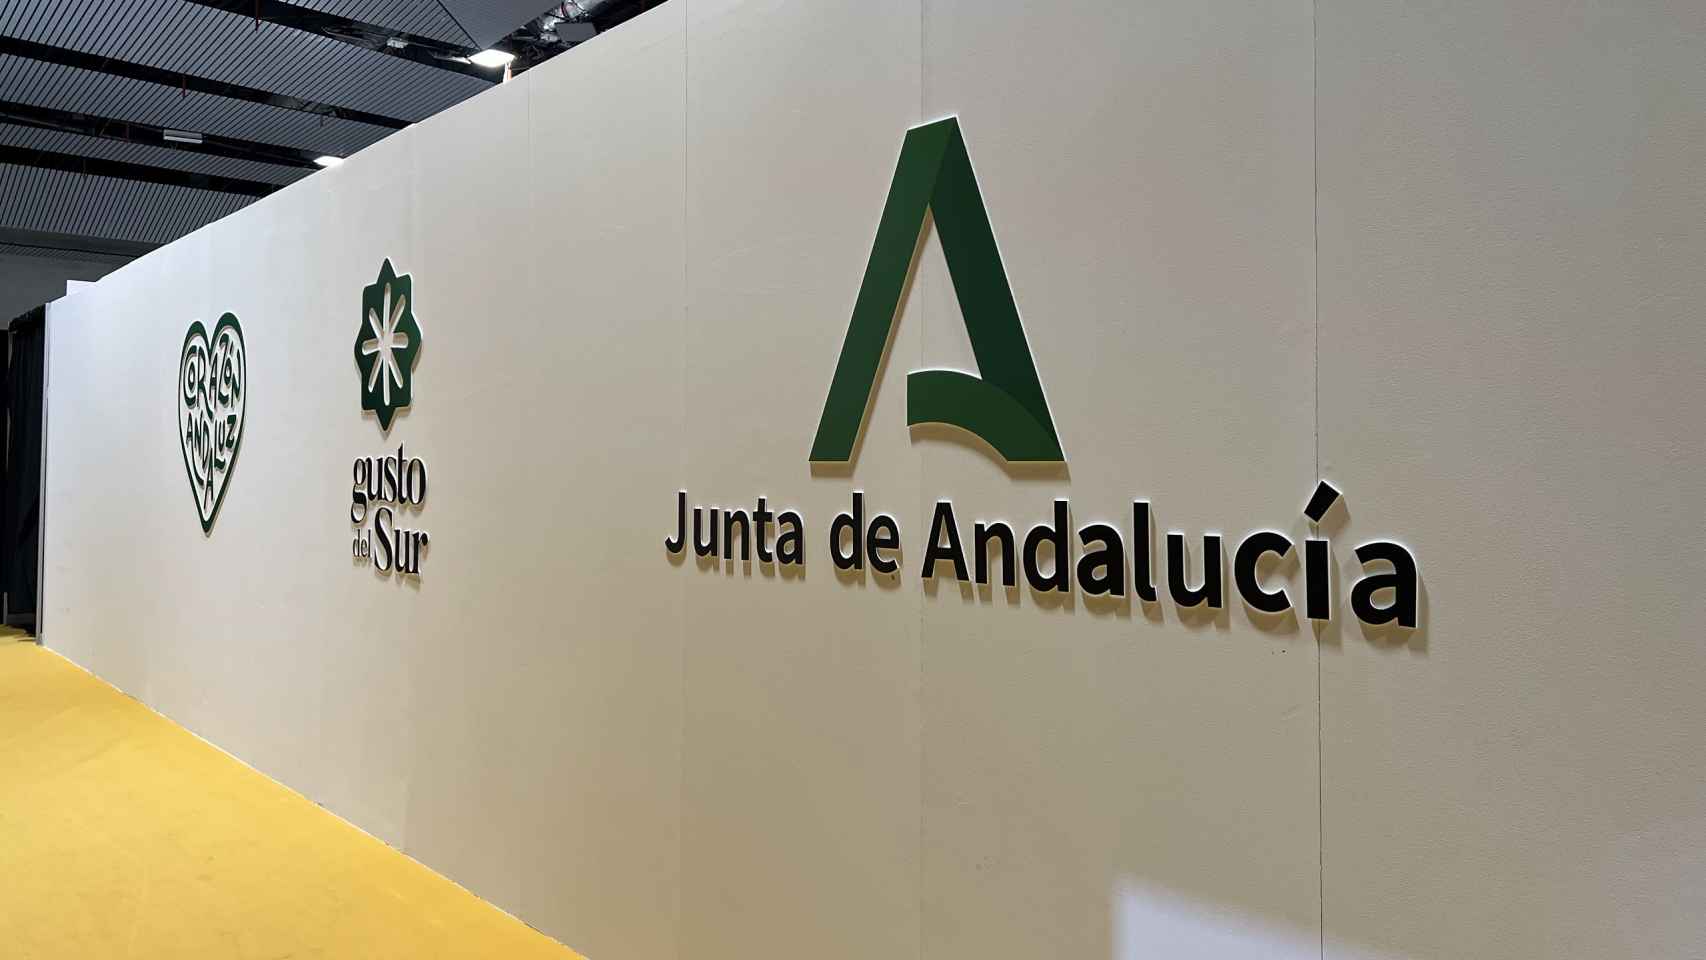 Gusto del Sur y Junta de Andalucía en Madrid Fusión